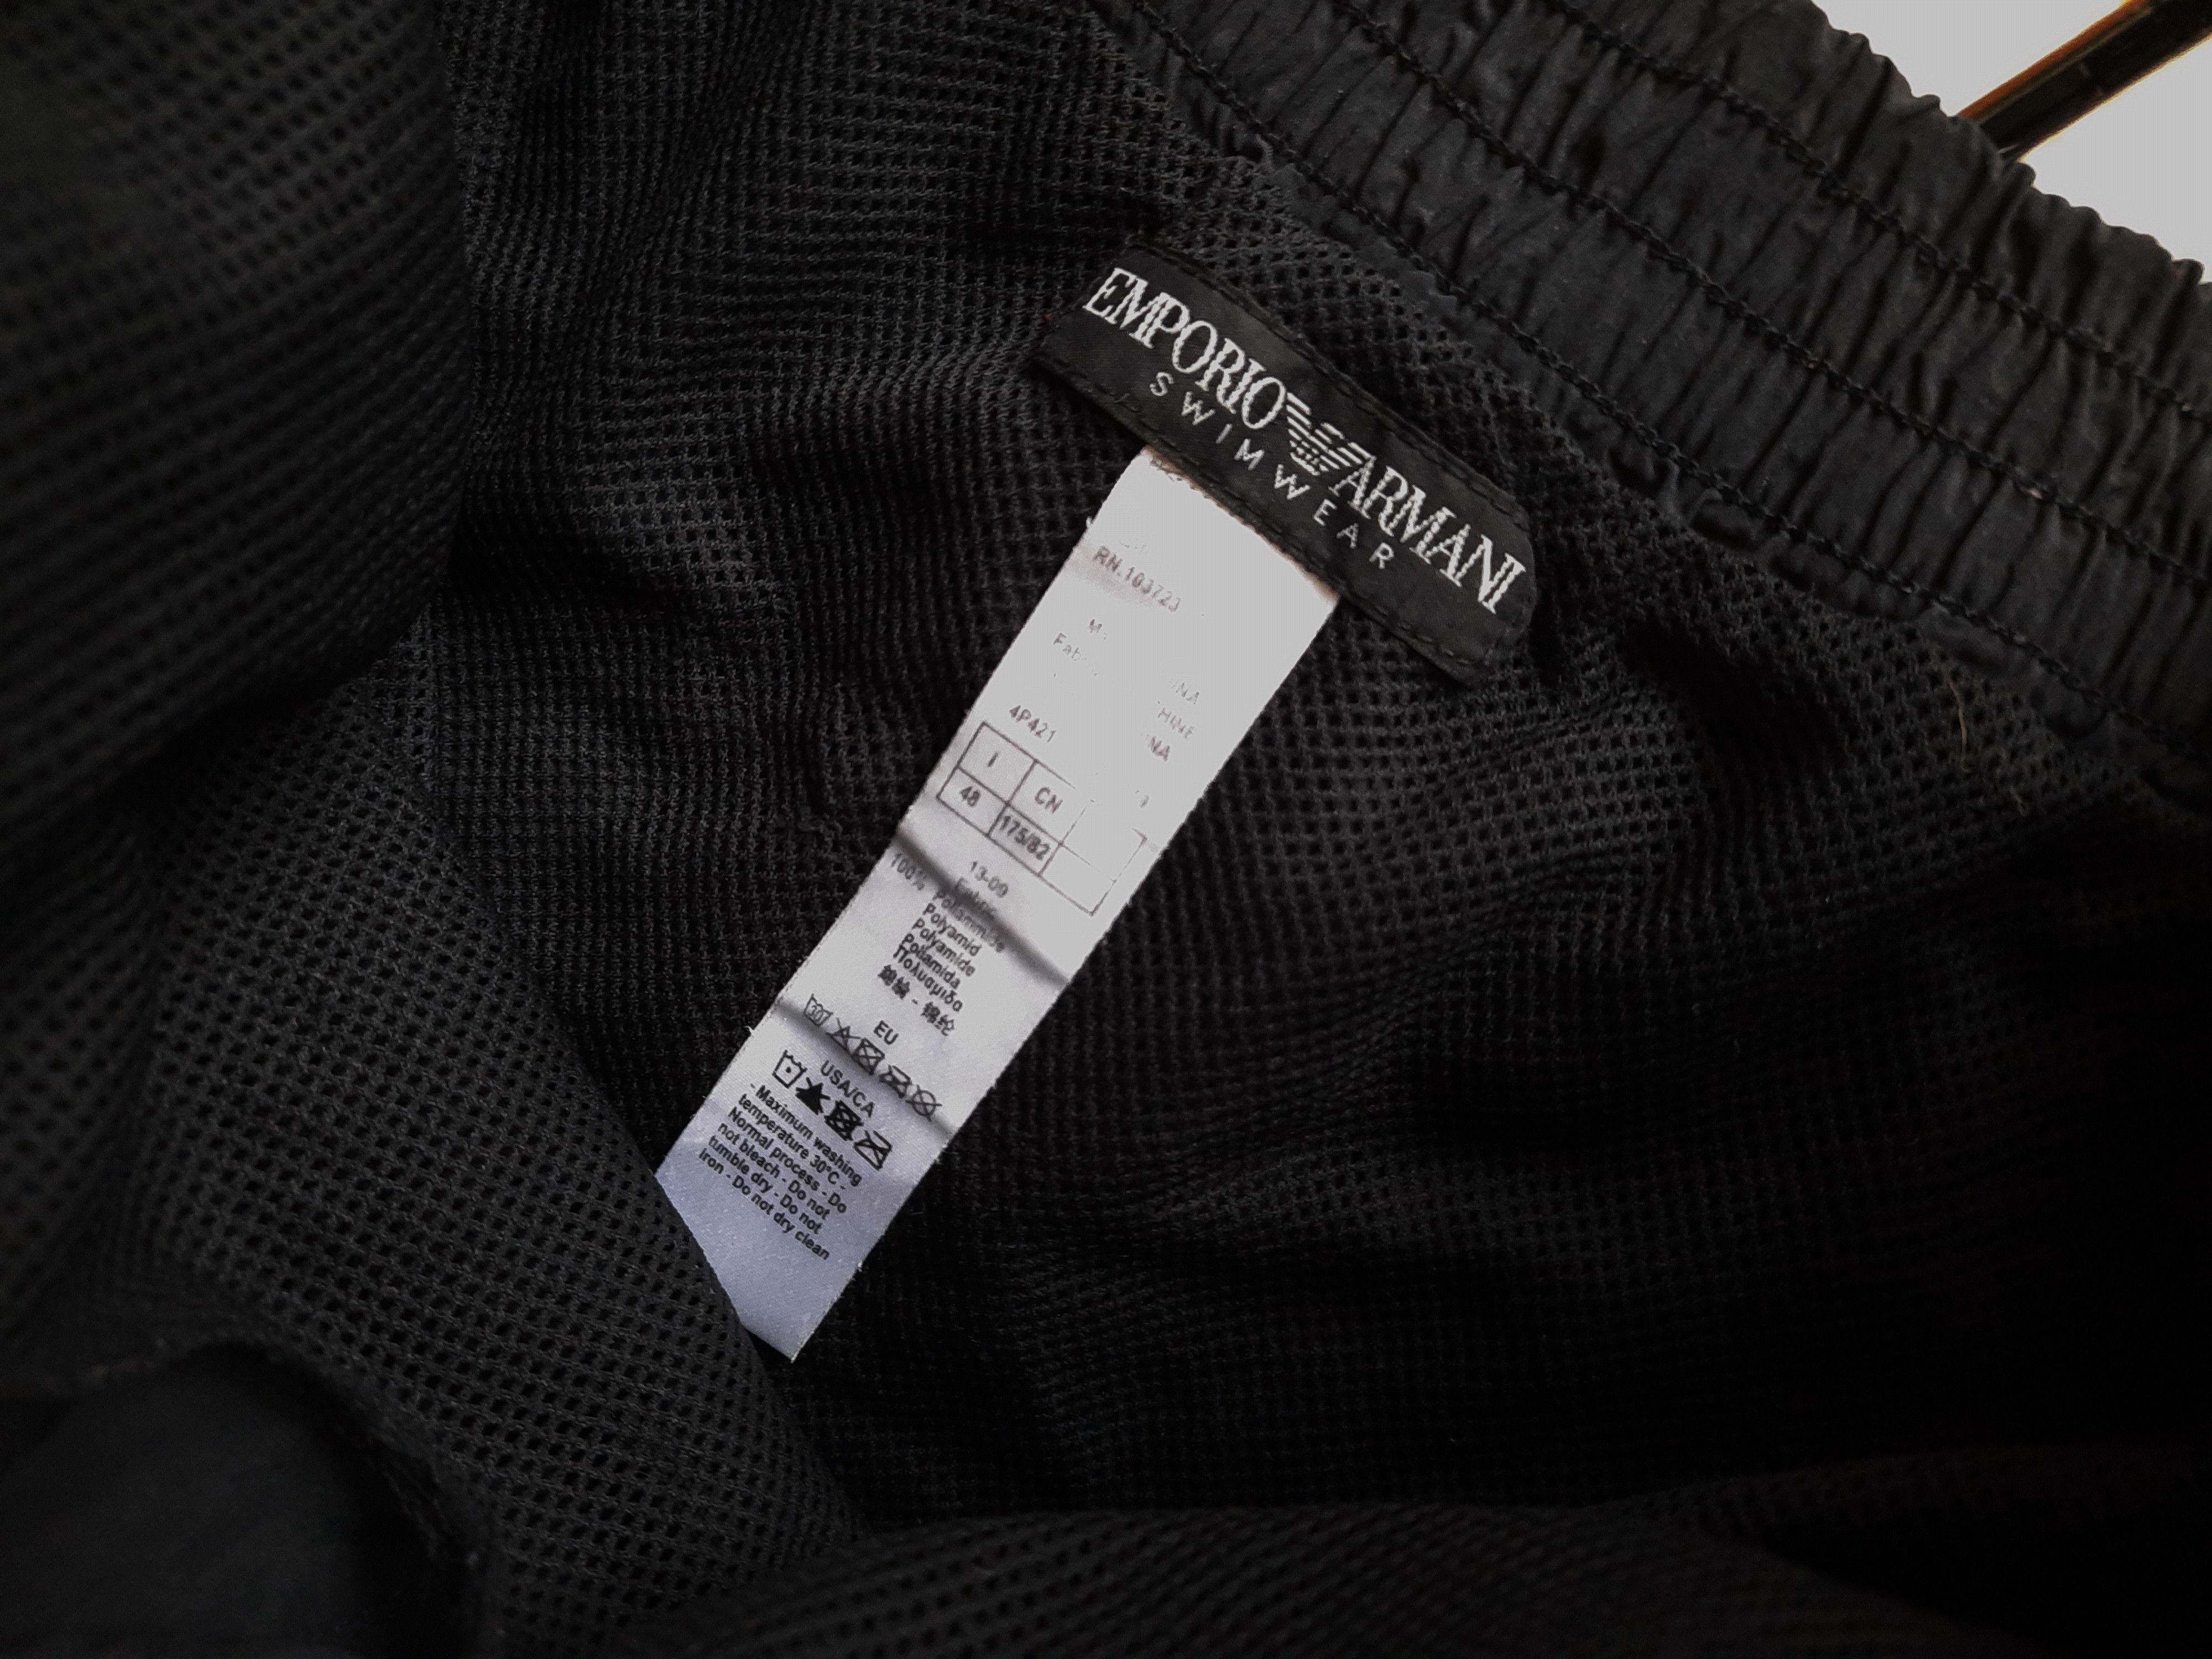 Emporio Armani Emporio Armani Shorts Size US 32 / EU 48 - 5 Thumbnail